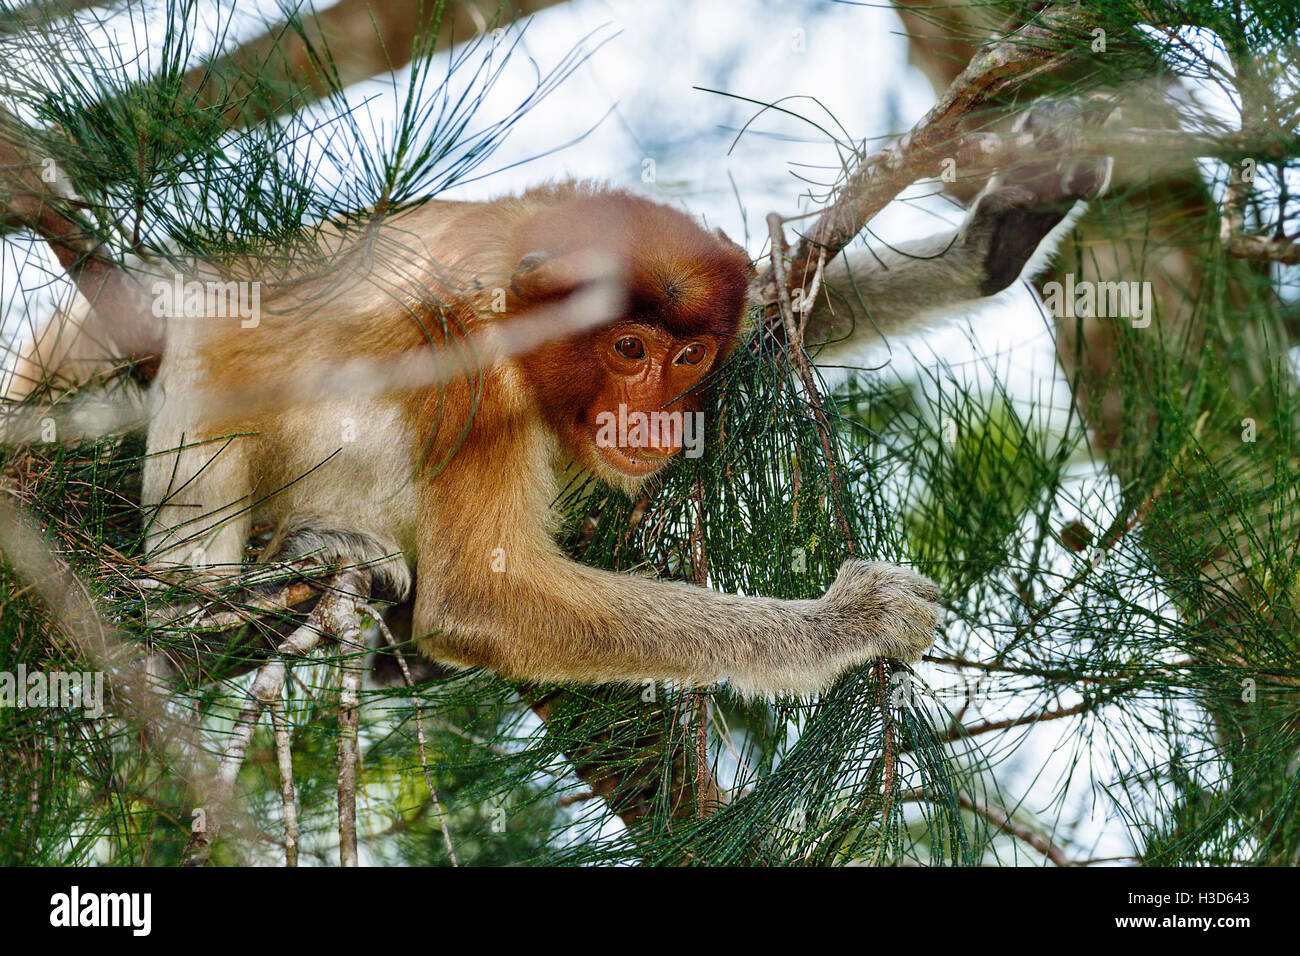 Ein Nasenaffe nimmt eine Bedrohung Haltung zur eine Truppe von Makaken, flach auf einem Ast, starrte auf die Makaken unten liegend Stockfoto